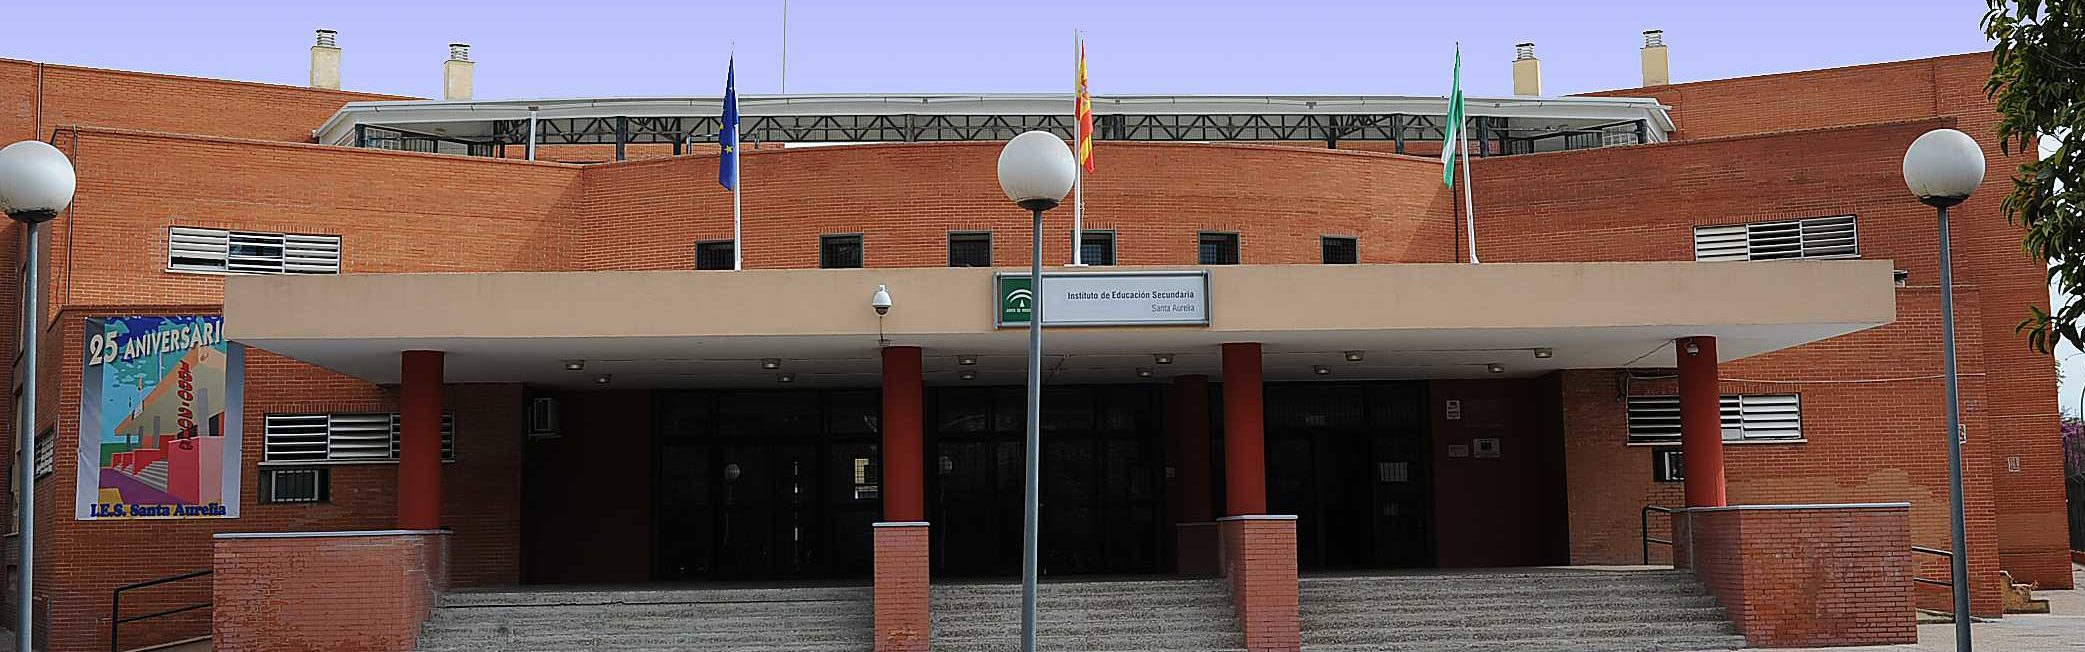 Institut Santa Aurélia. Séville